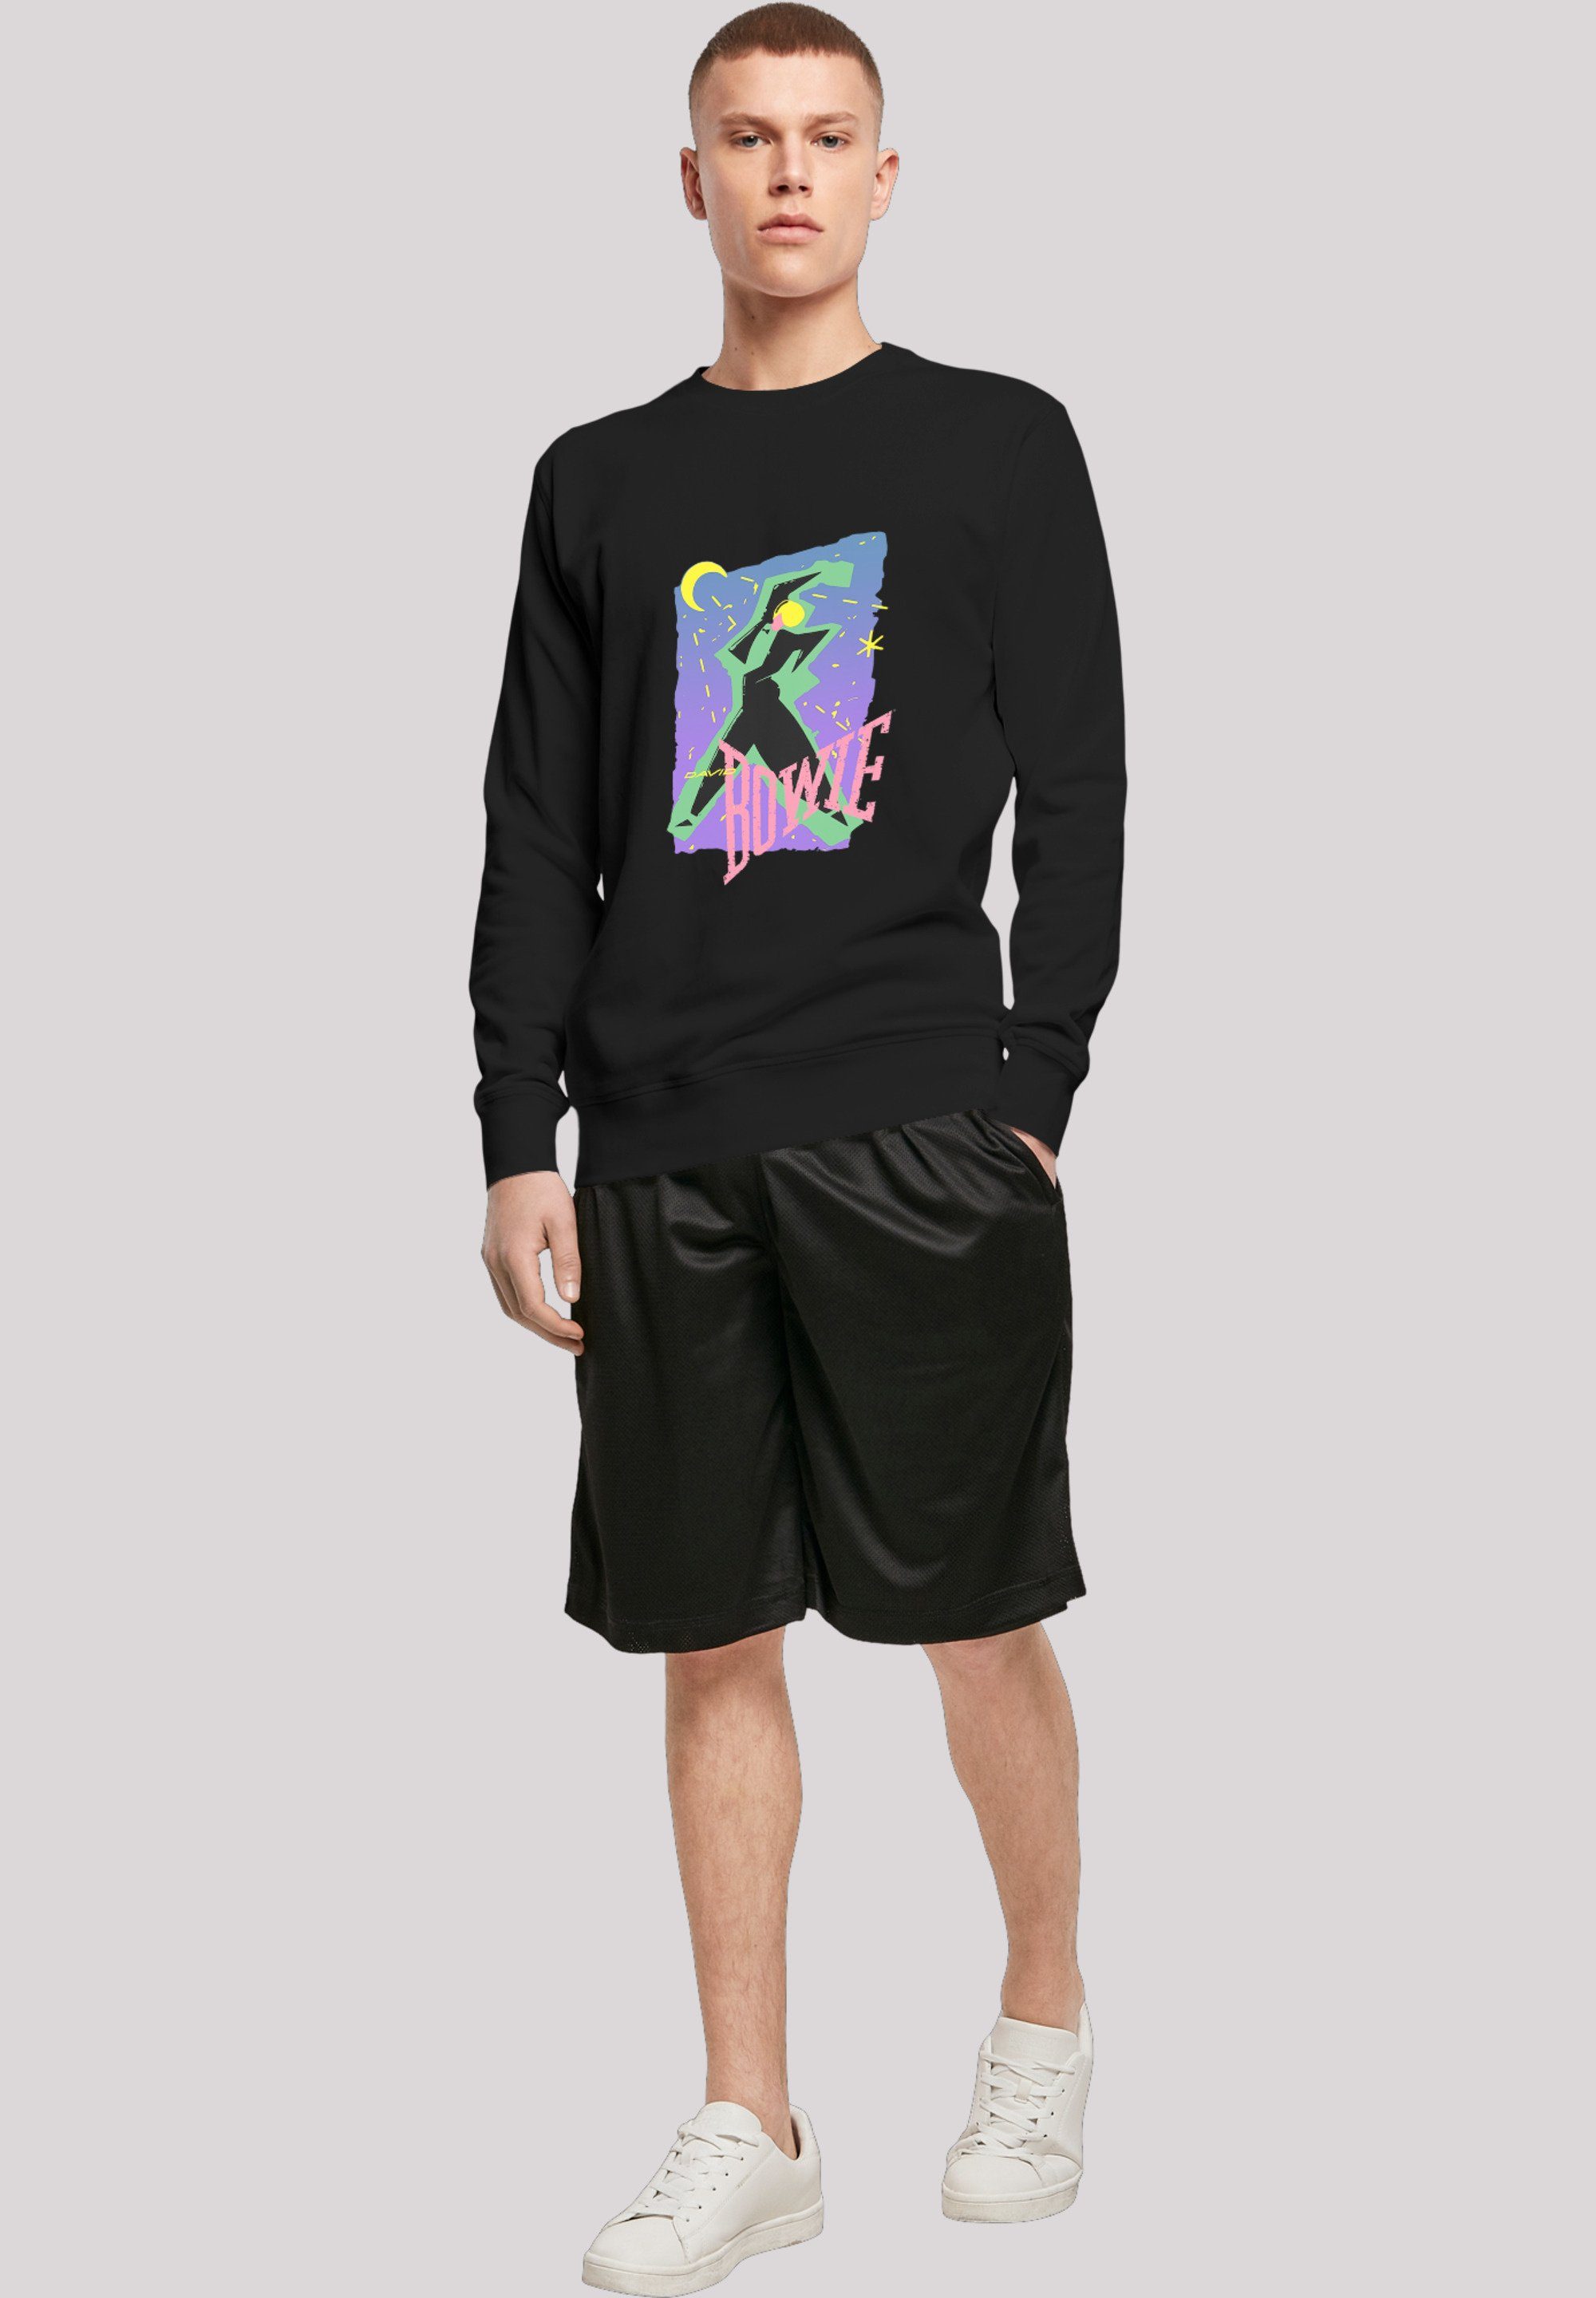 Herren Pullover F4NT4STIC Sweatshirt Sweatshirt David Bowie Moonlight Dance